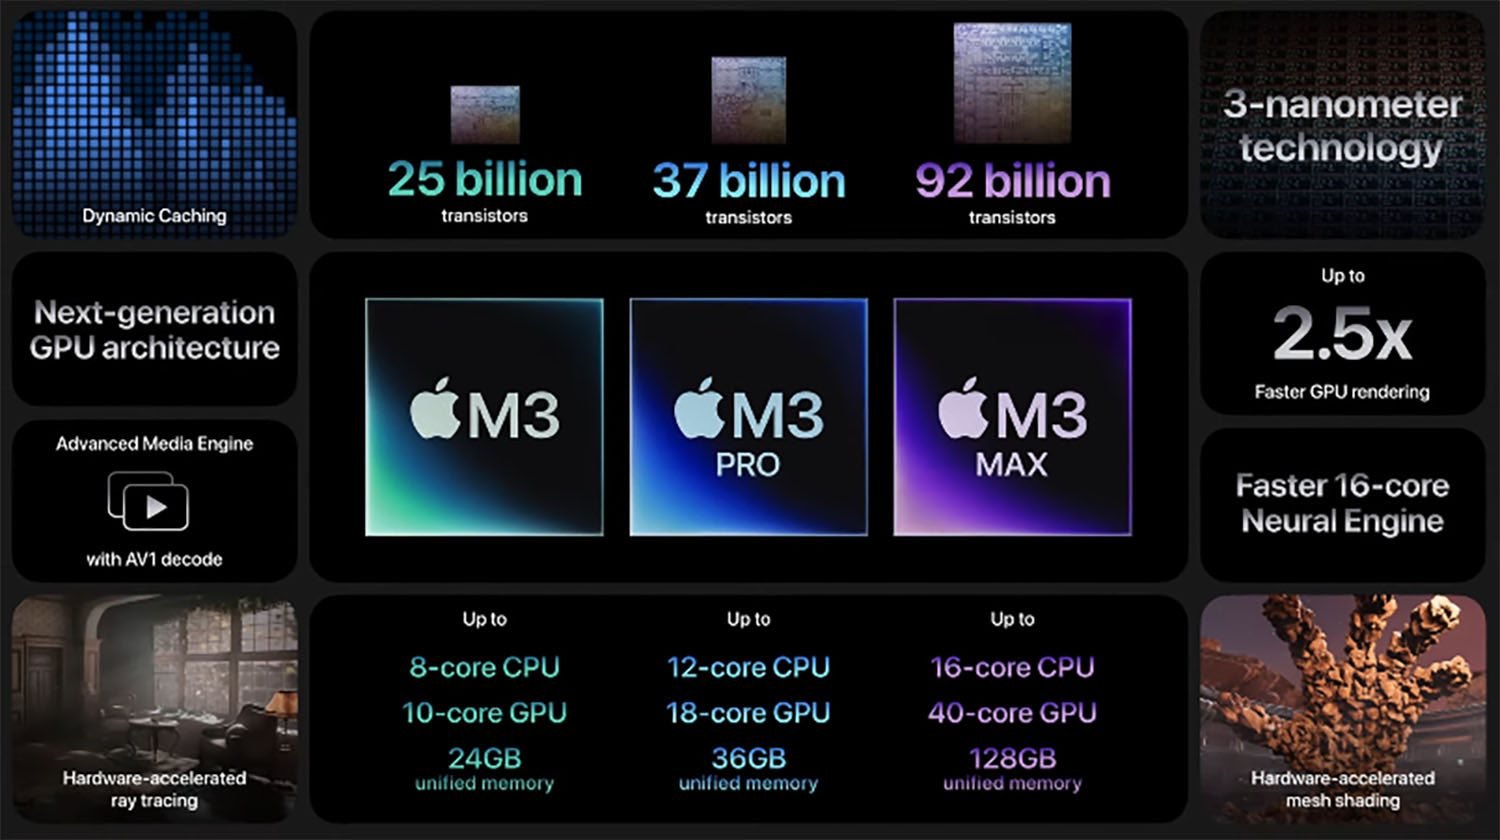 Oto wszystkie nowości pokazane na prezentacji „Scary Fast” ciekawostki wydajność, technologia, procesory, prezentacja, Nowości, macbooki, MacBook Pro, M3, konferencja, komputery, innowacje, iMac, design, Apple, aktualizacje  Nocna prezentacja firmy Apple już za nami, więc przedstawimy wam jeszcze raz wszystkie nowości, które pojawiły się podczas tej nieco 30-minutowej konferencji. M3 procesor